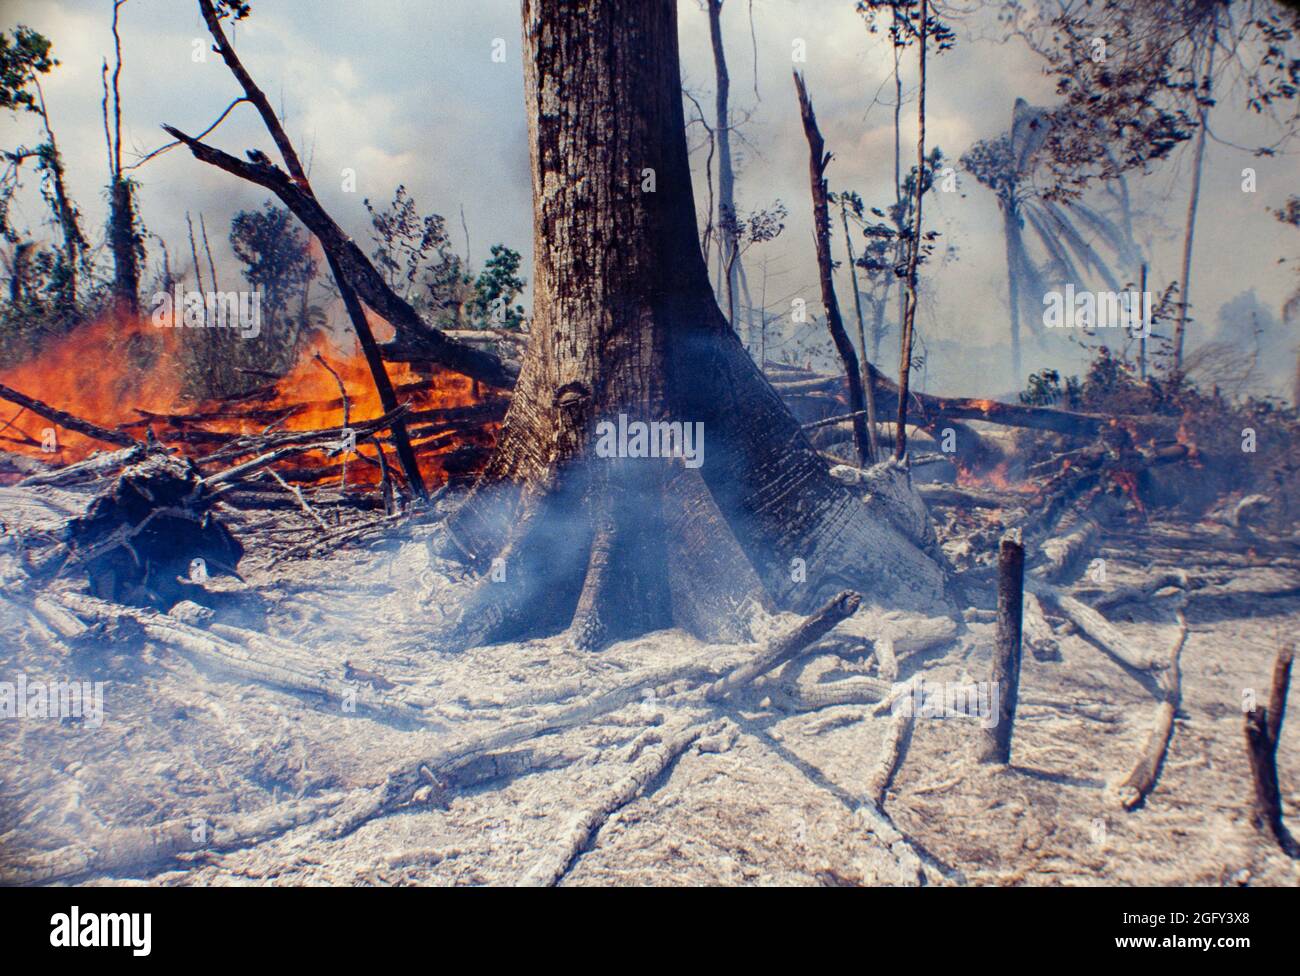 Flammen und Hitze, Details der Verbrennung des Amazonas-Regenwaldes, Umweltzerstörung durch Abholzung. Stockfoto